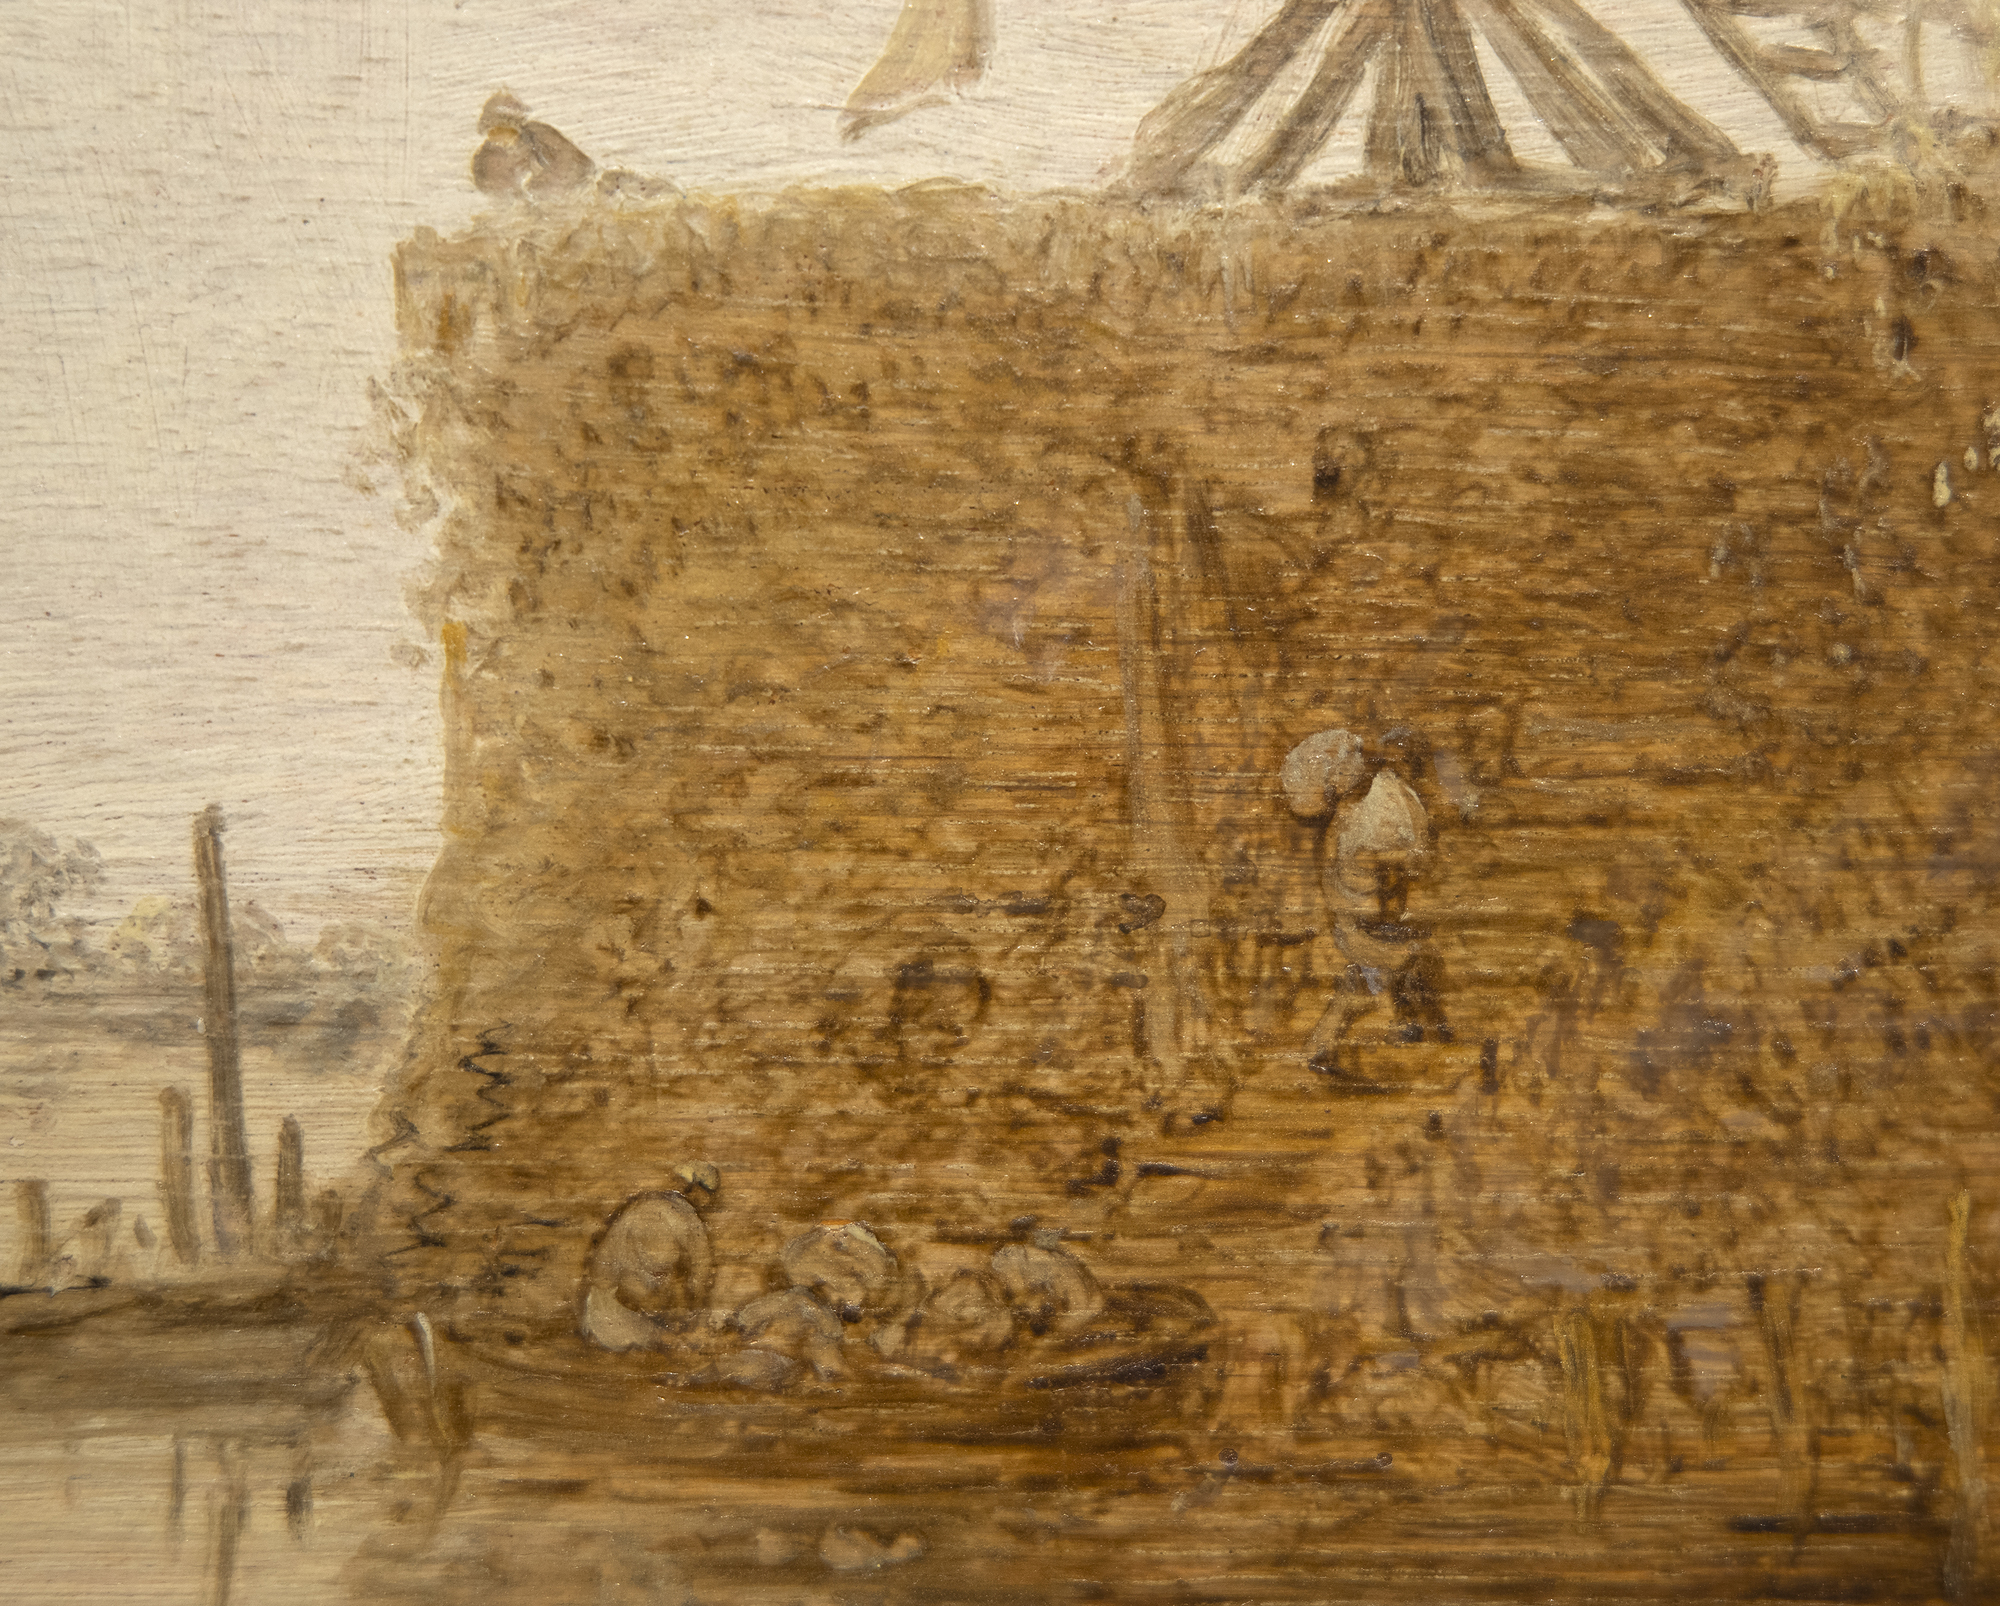 JAN JOSEPHSZOON فان GOYEN - المناظر الطبيعية النهر مع طاحونة وكنيسة - النفط على لوحة - 22 1/2 × 31 3/4 في.